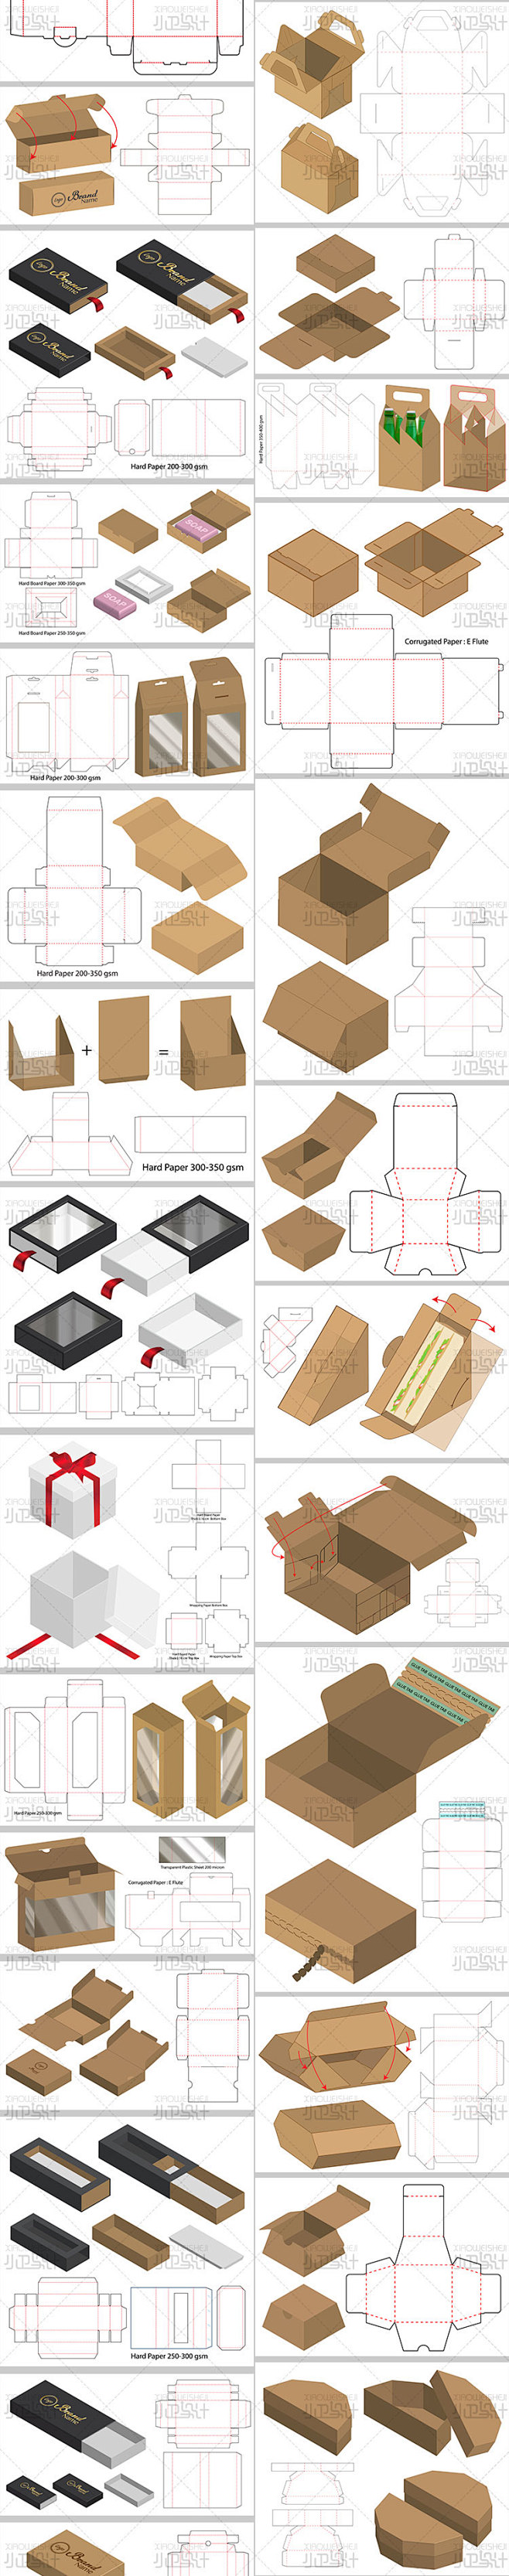 3D展示模板各类产品包装盒子纸箱设计稿刀...